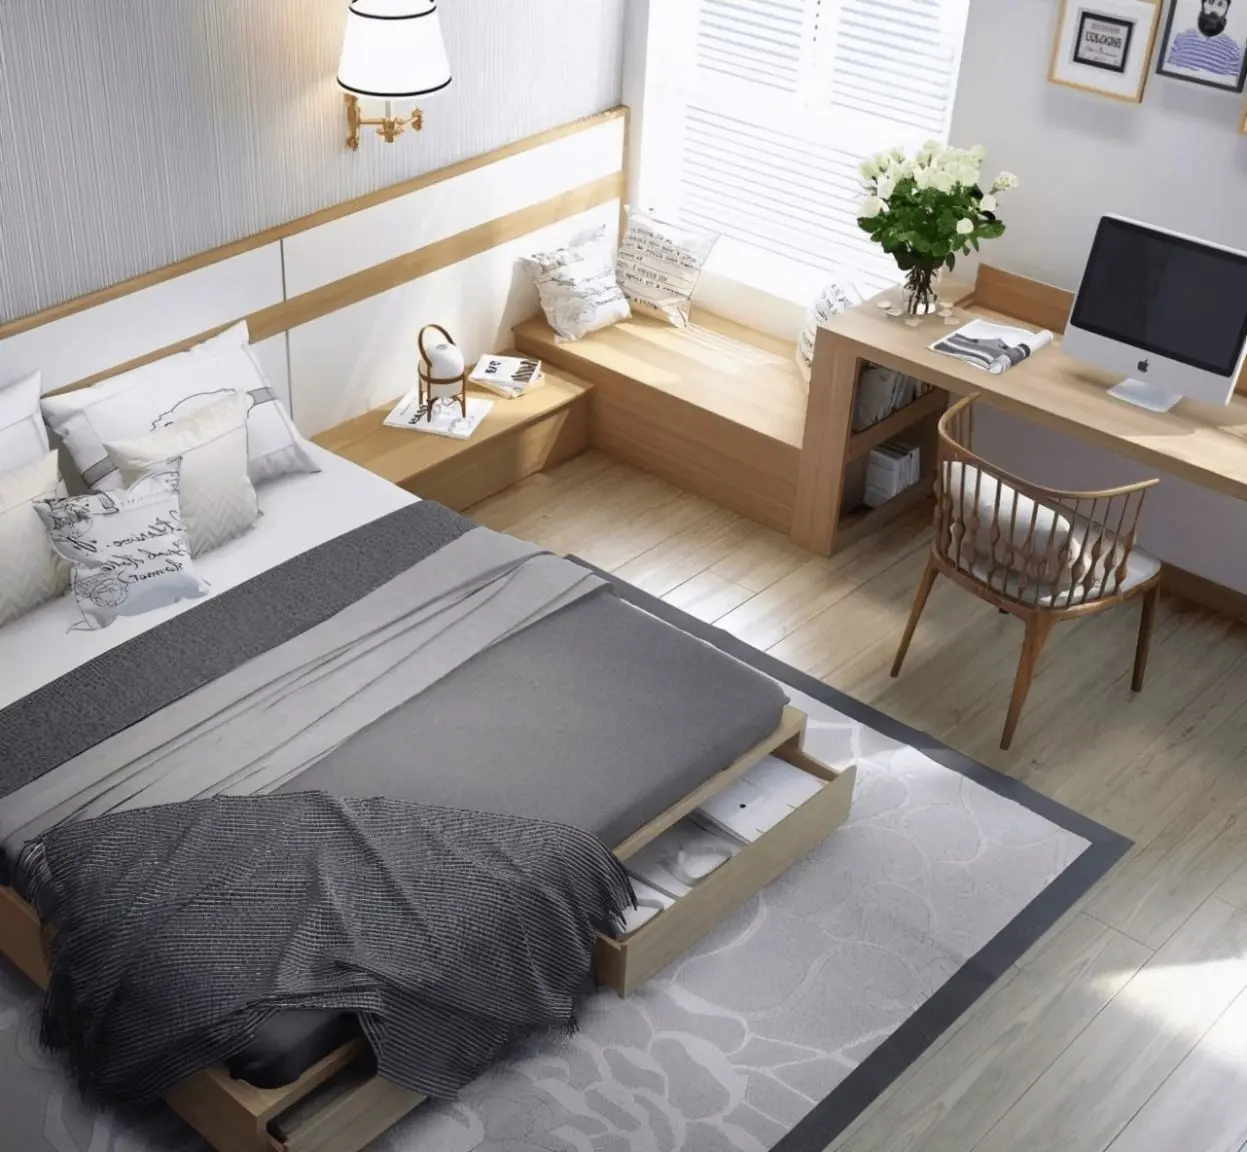 Diện tích phòng ảnh hưởng đến kích thước bàn làm việc trong phòng ngủ